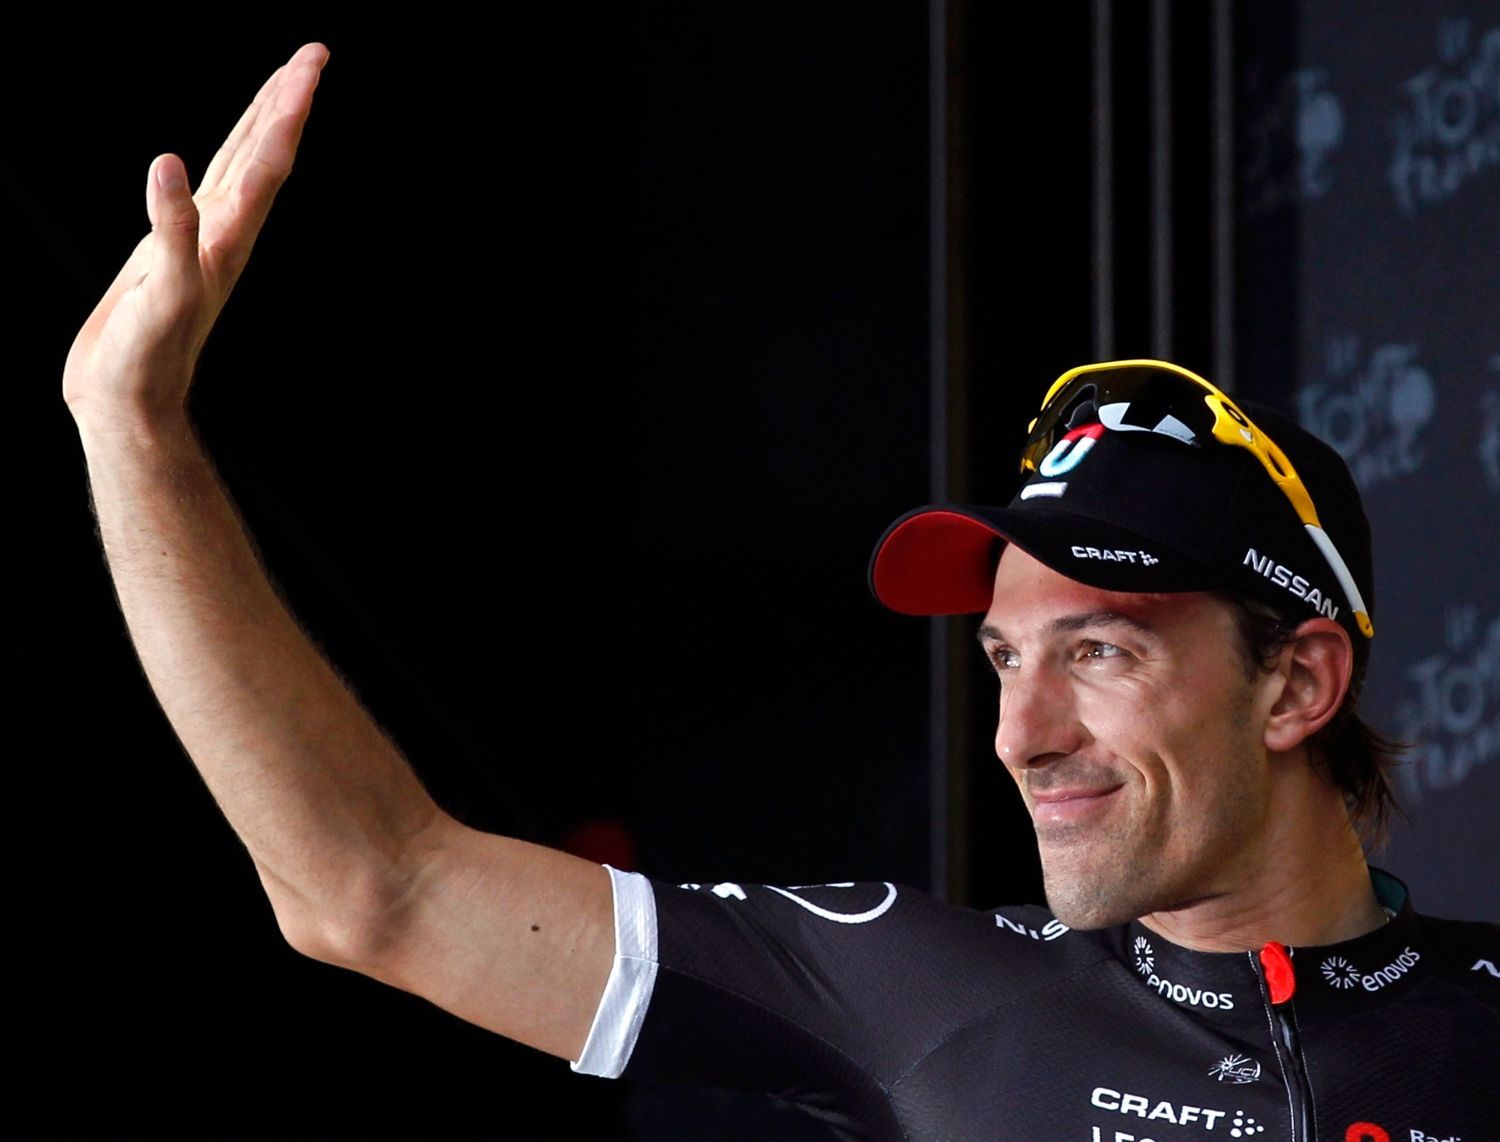 Švýcarský cyklista Fabian Cancellara mává fanouškům v Boulogne-sur-Mer během 99. Tour de France